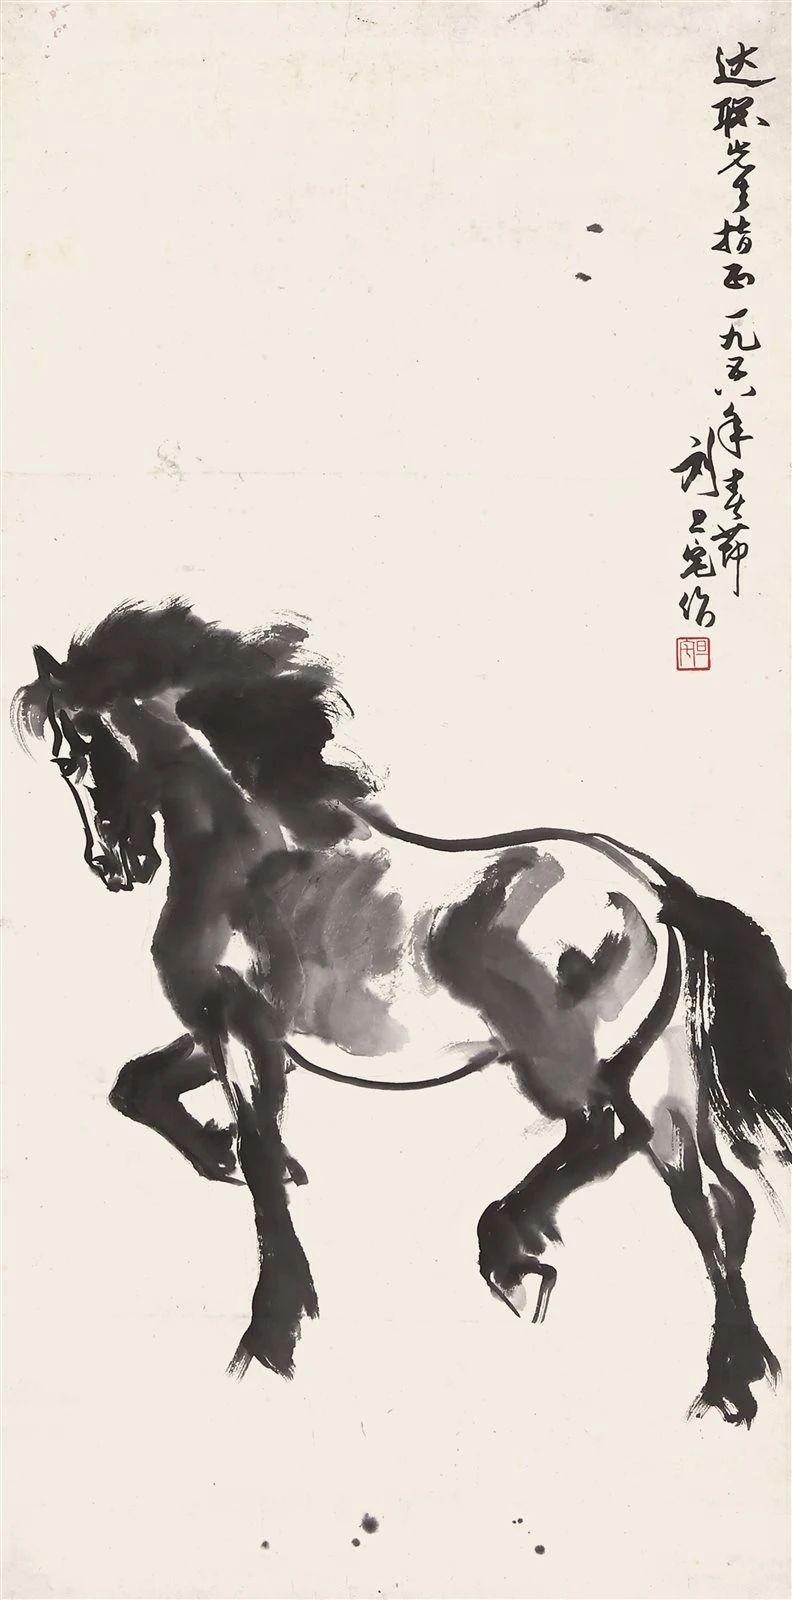 除了徐悲鸿以后,还会有其他的画家对于马也有着自己不同的表现手法